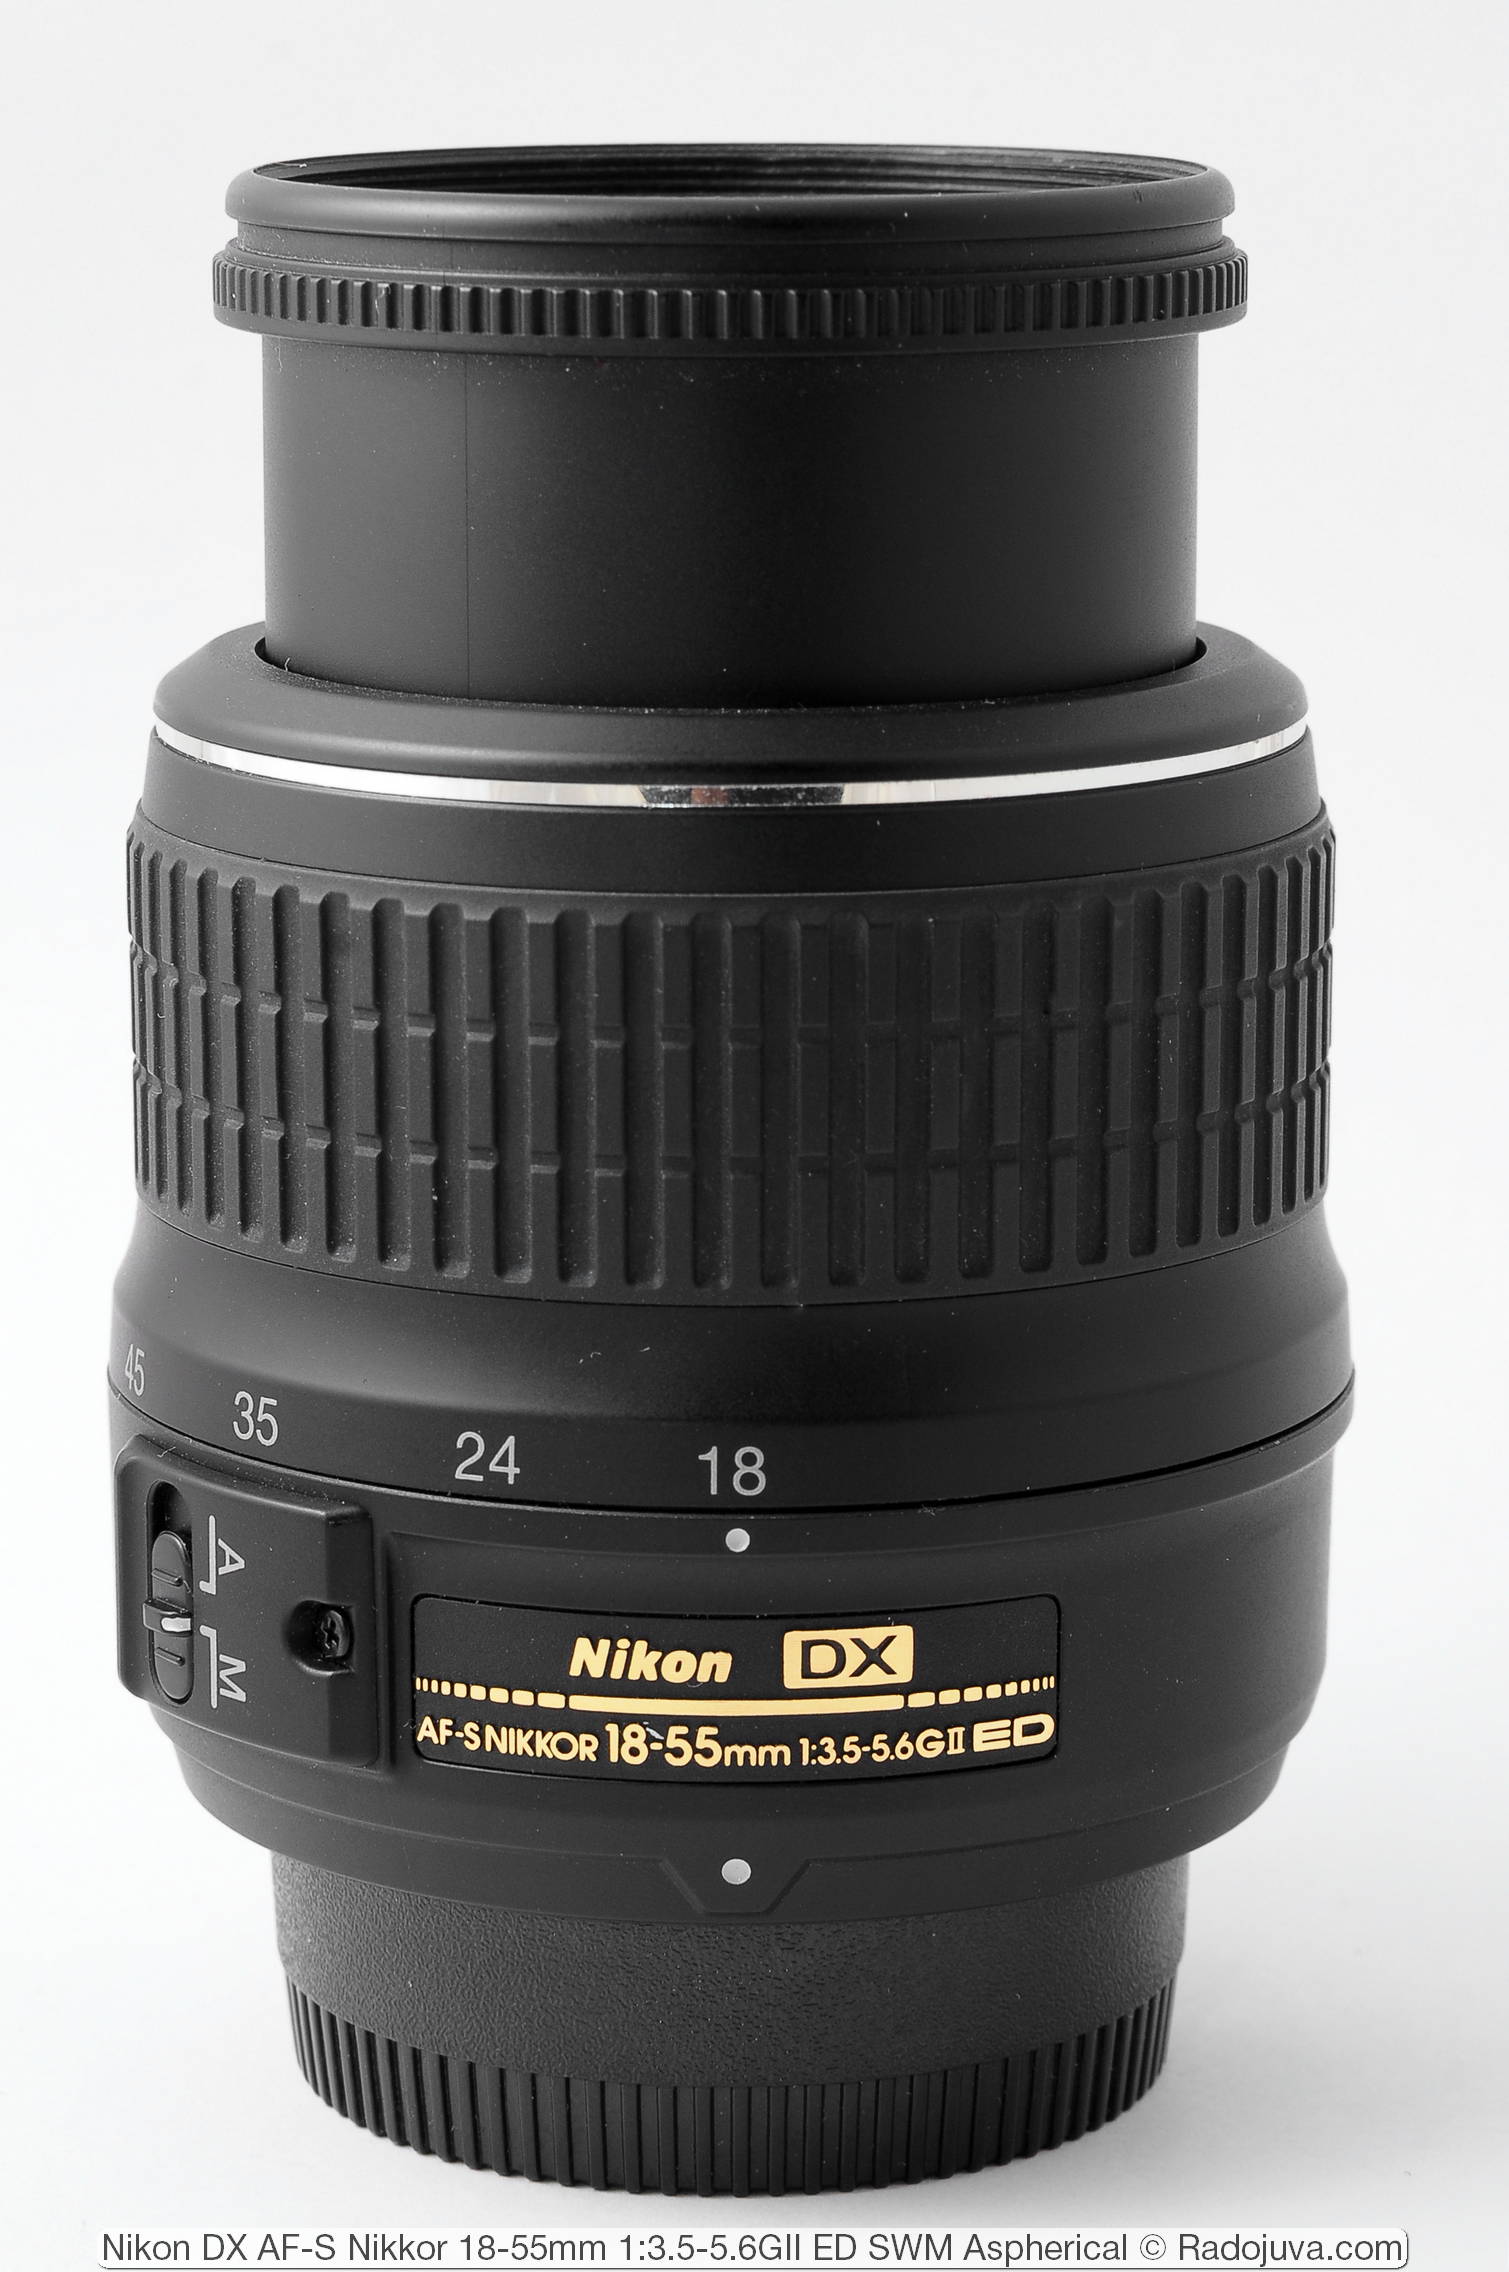 Nikon DX AF-S Nikkor 18-55mm 1:3.5-5.6GII ED SWM Aspherical